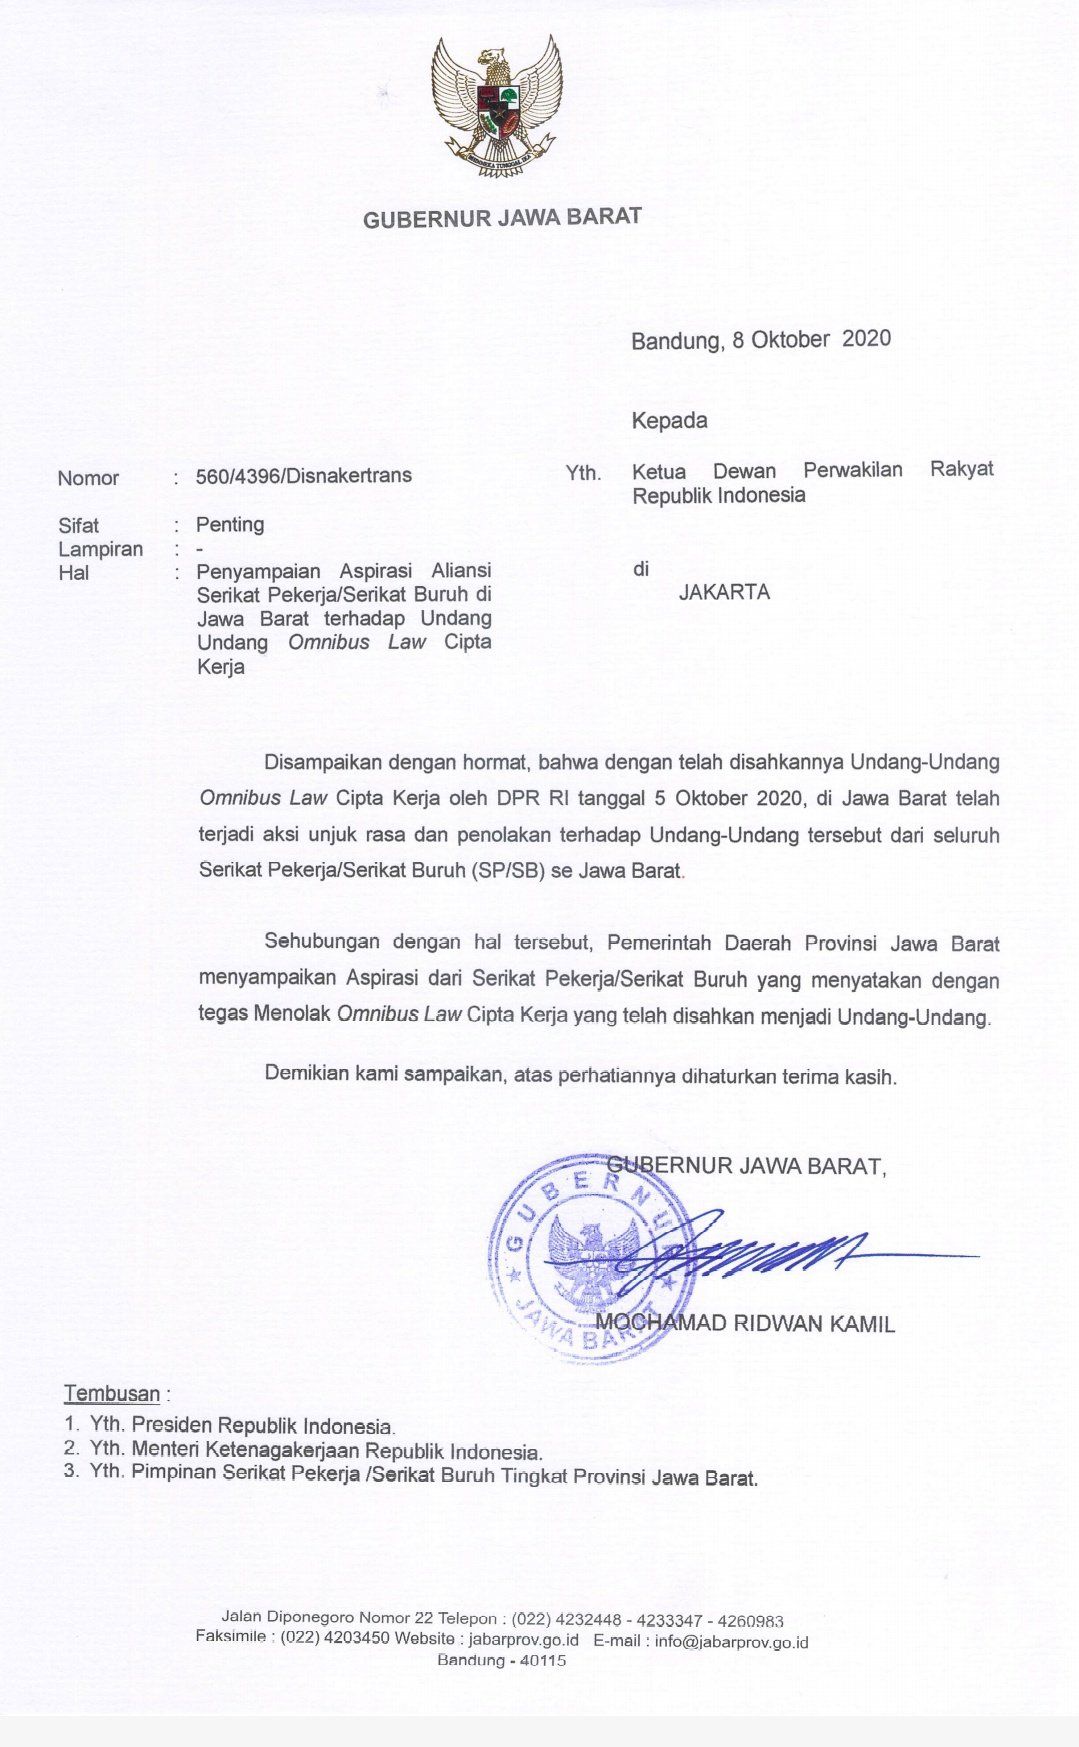 Surat Ridwan Kamil kepada DPR RI./twitter.com/@Gilang_Mahsesa.